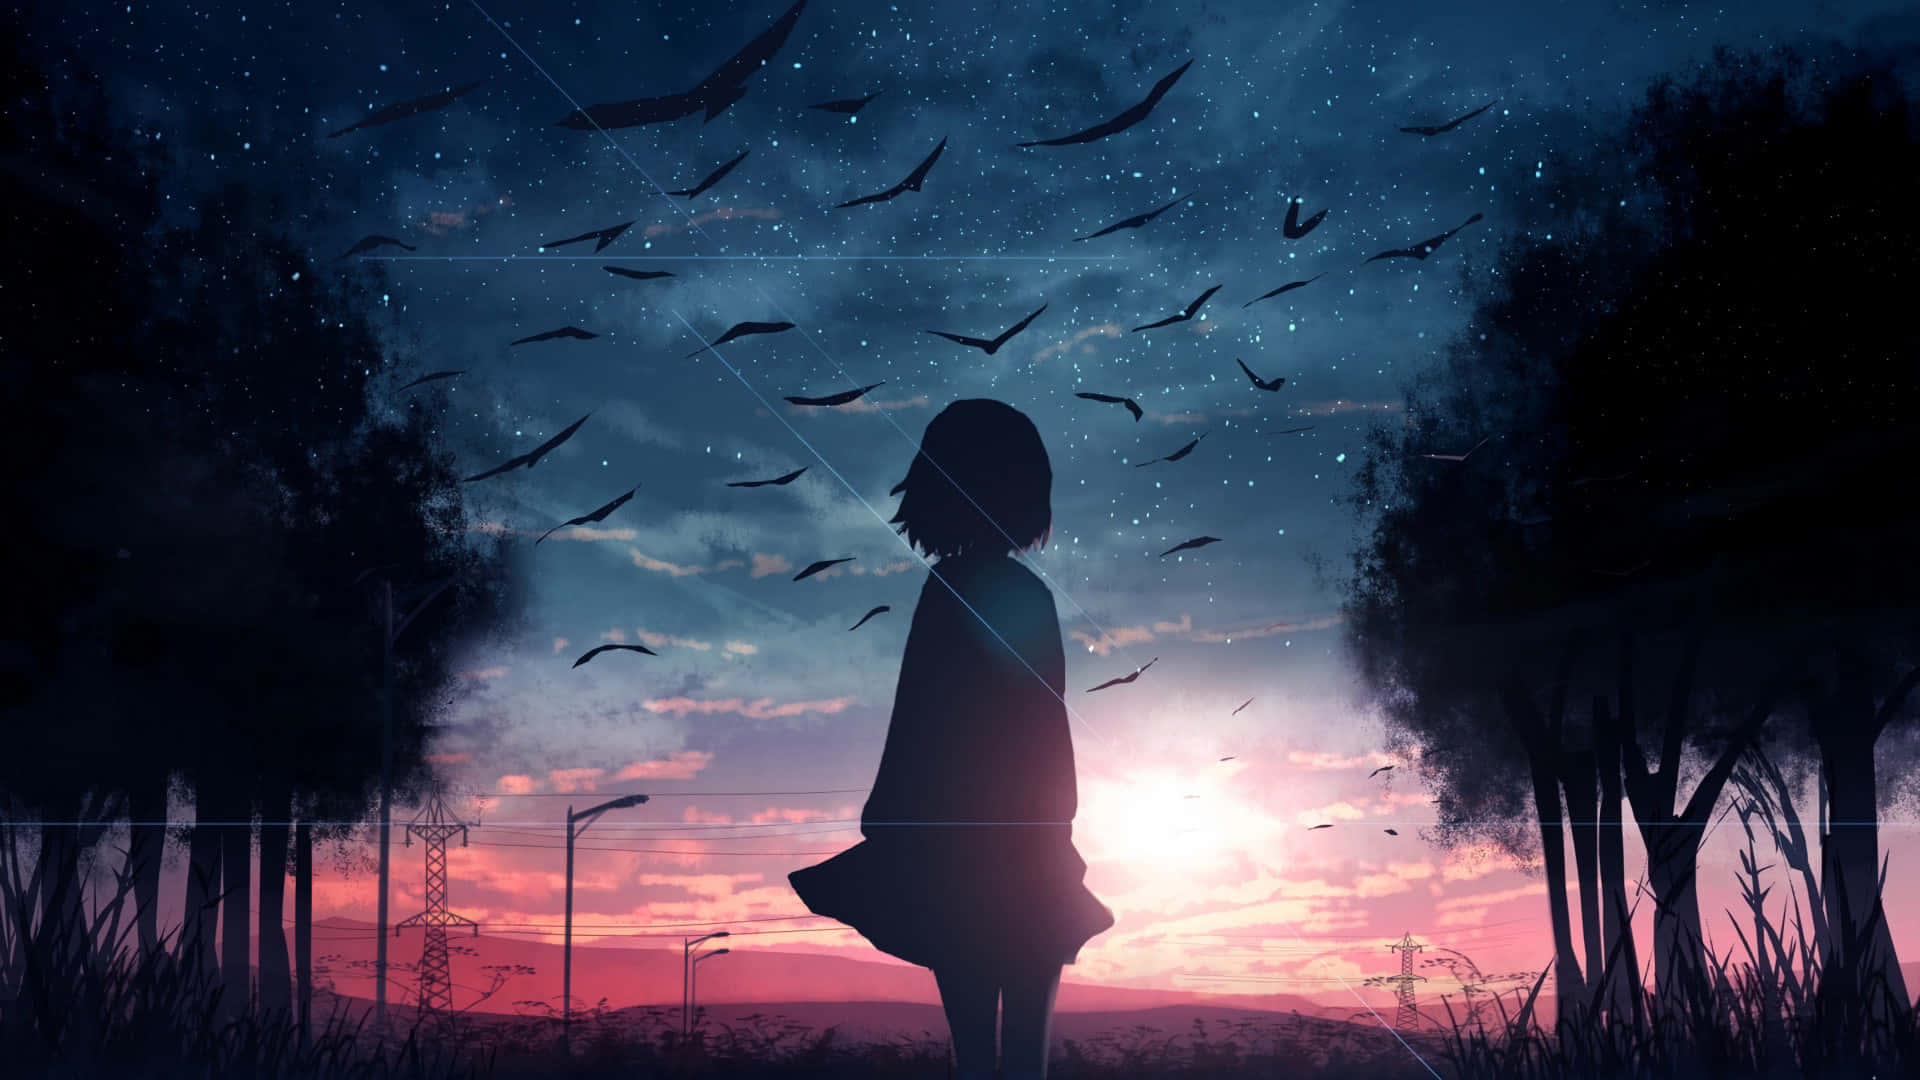 Enchanting Anime Sunset Landscape